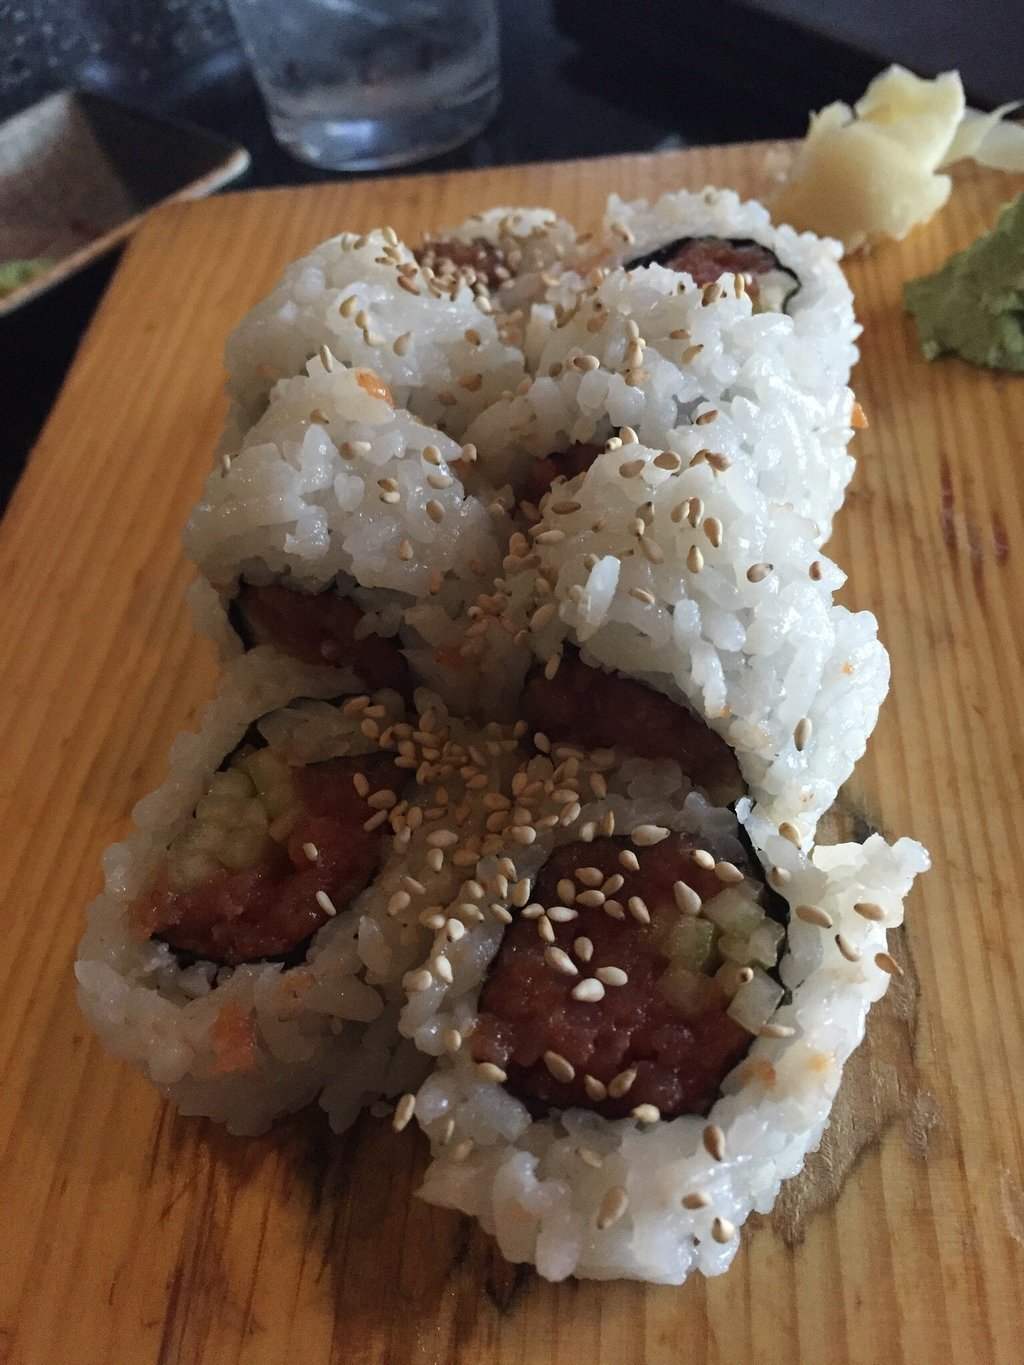 J Sushi Japanese Restaurant